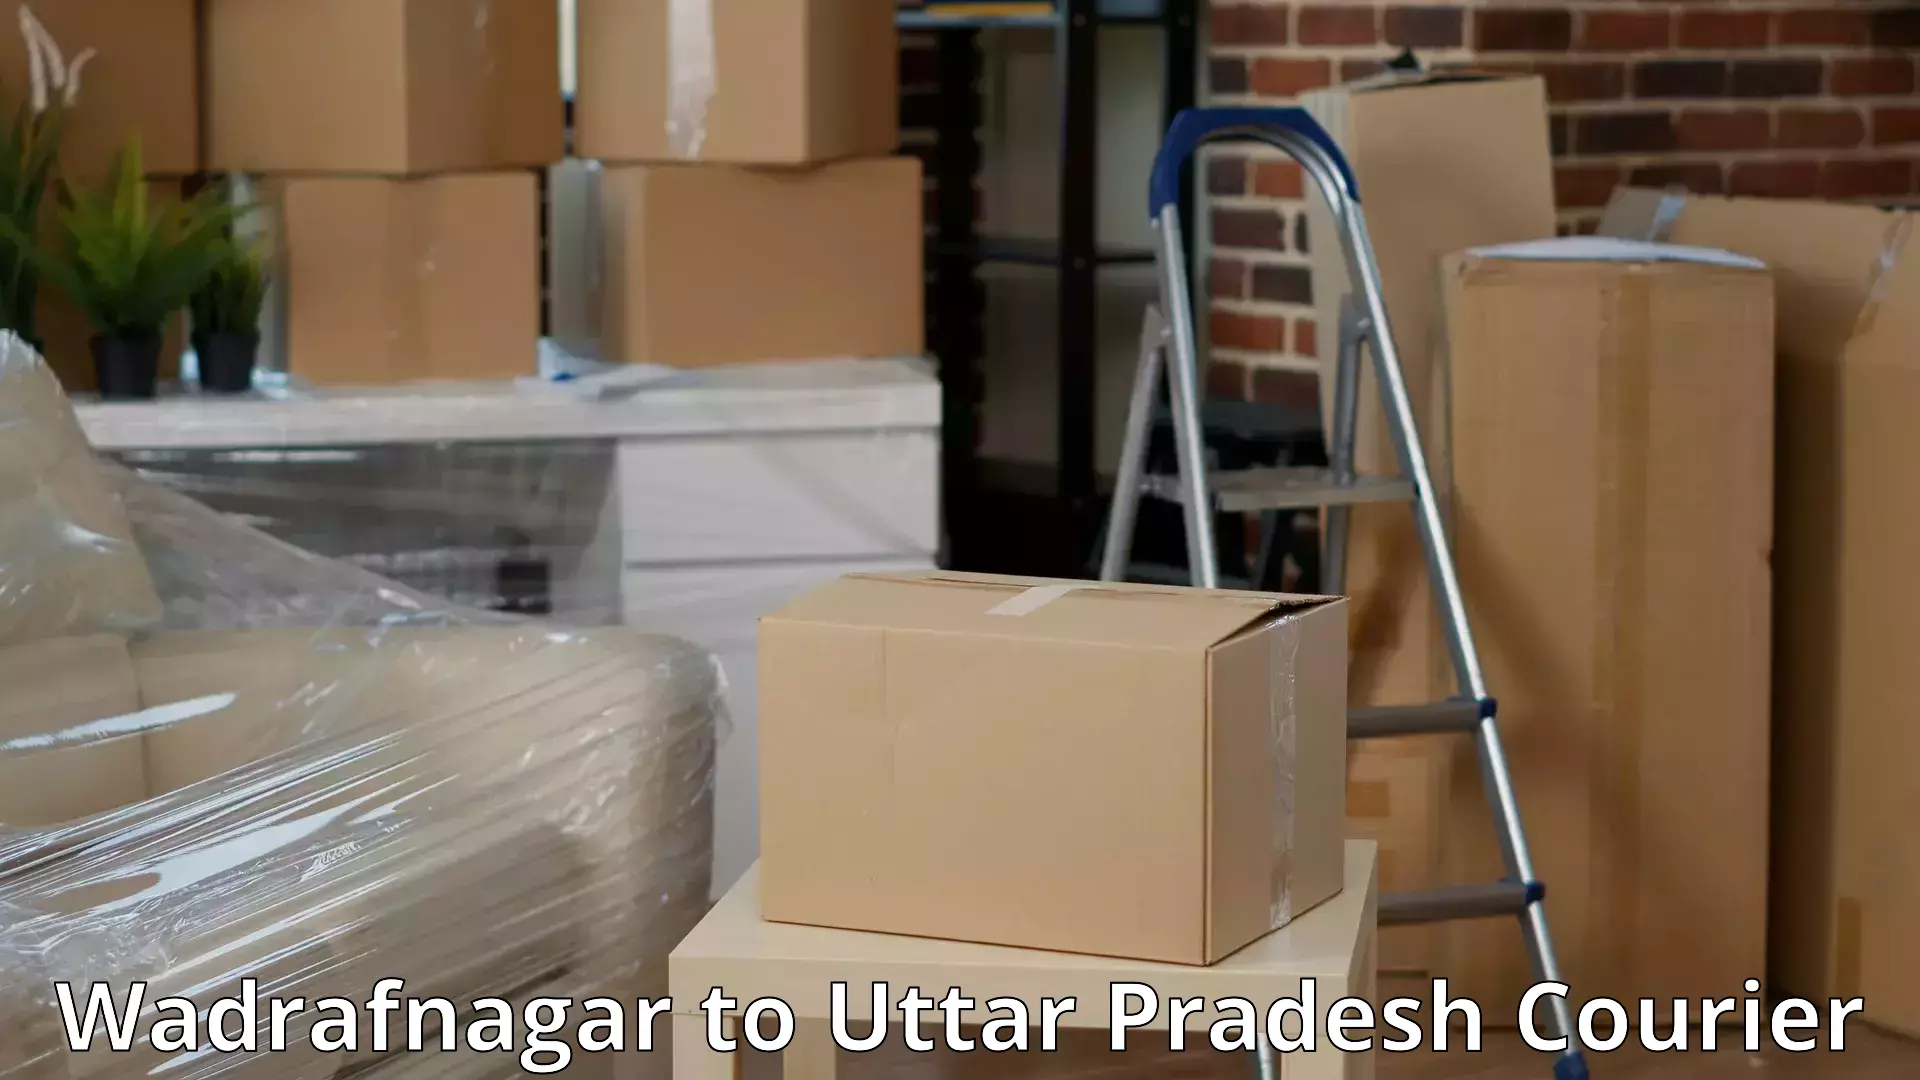 Quick moving services Wadrafnagar to Hamirpur Uttar Pradesh